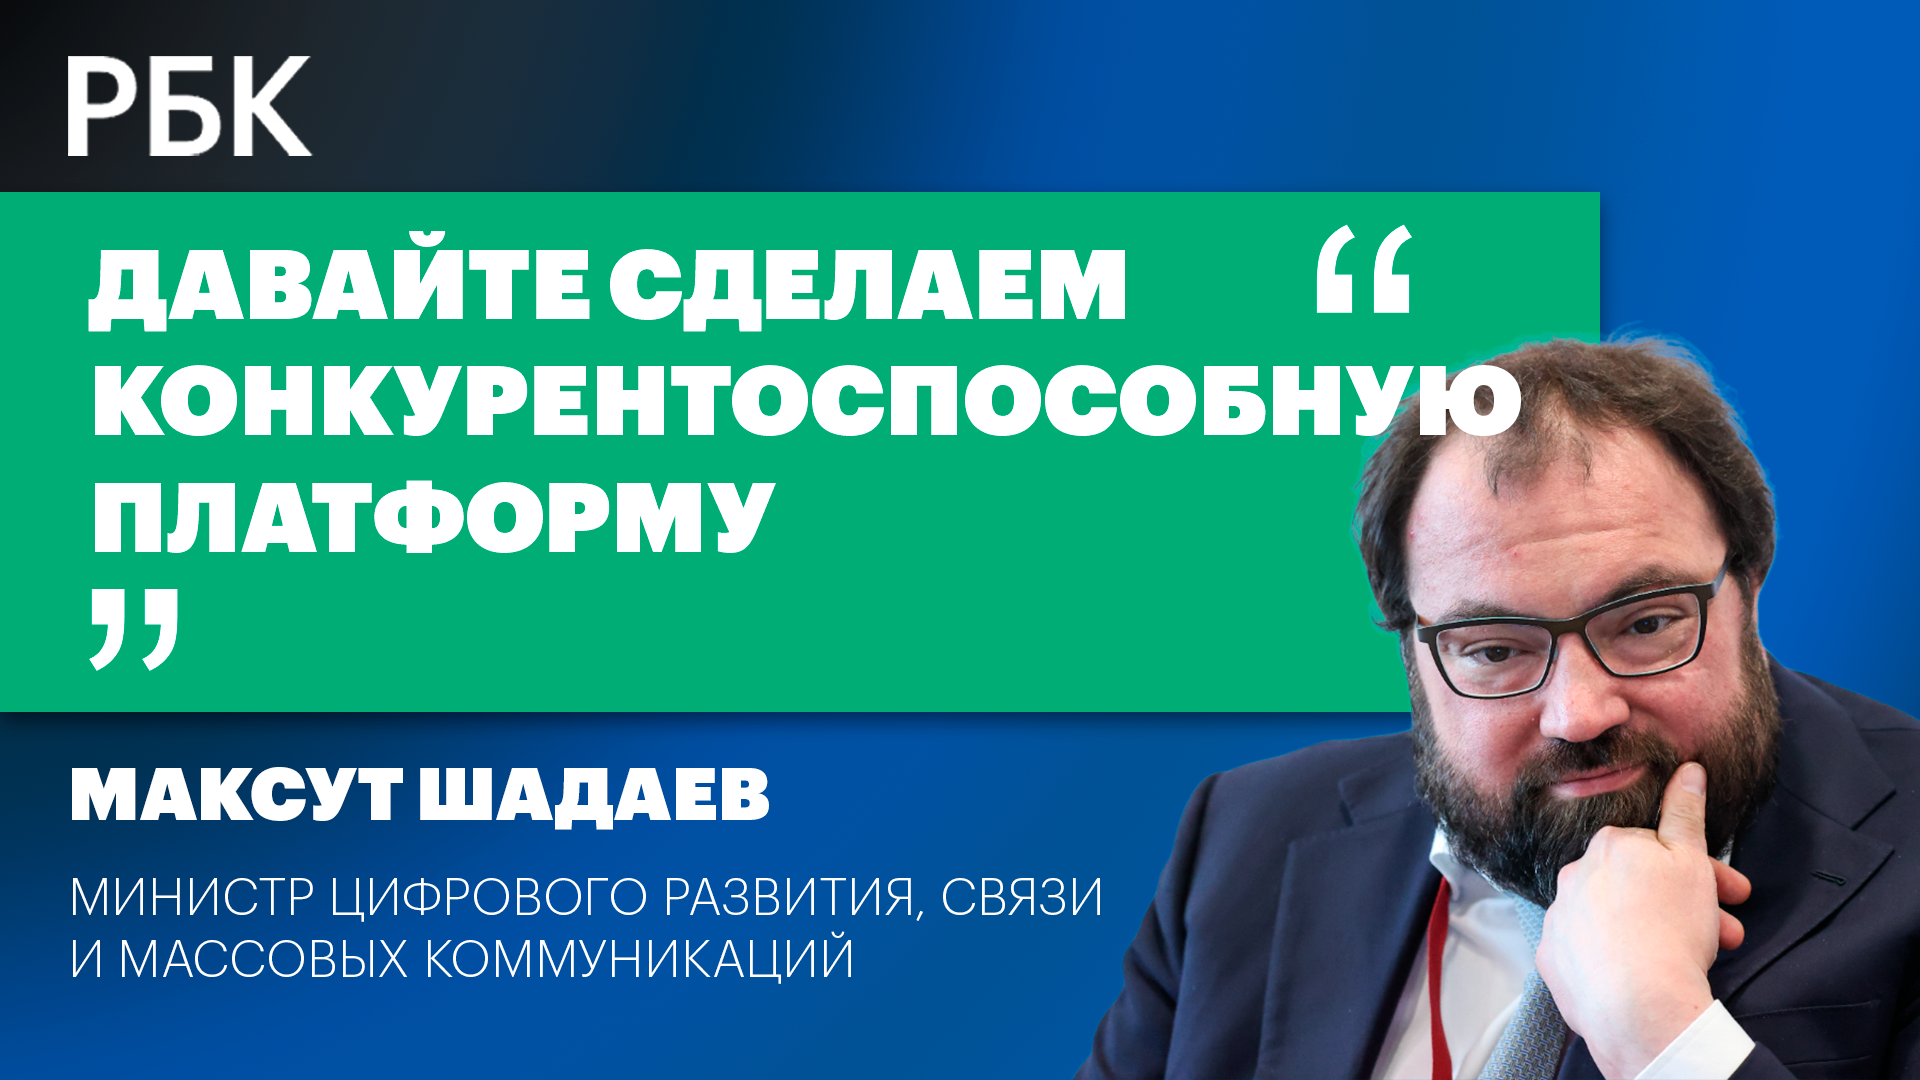 Максут Шадаев о том, почему нельзя наказывать за VPN и закрывать YouTube